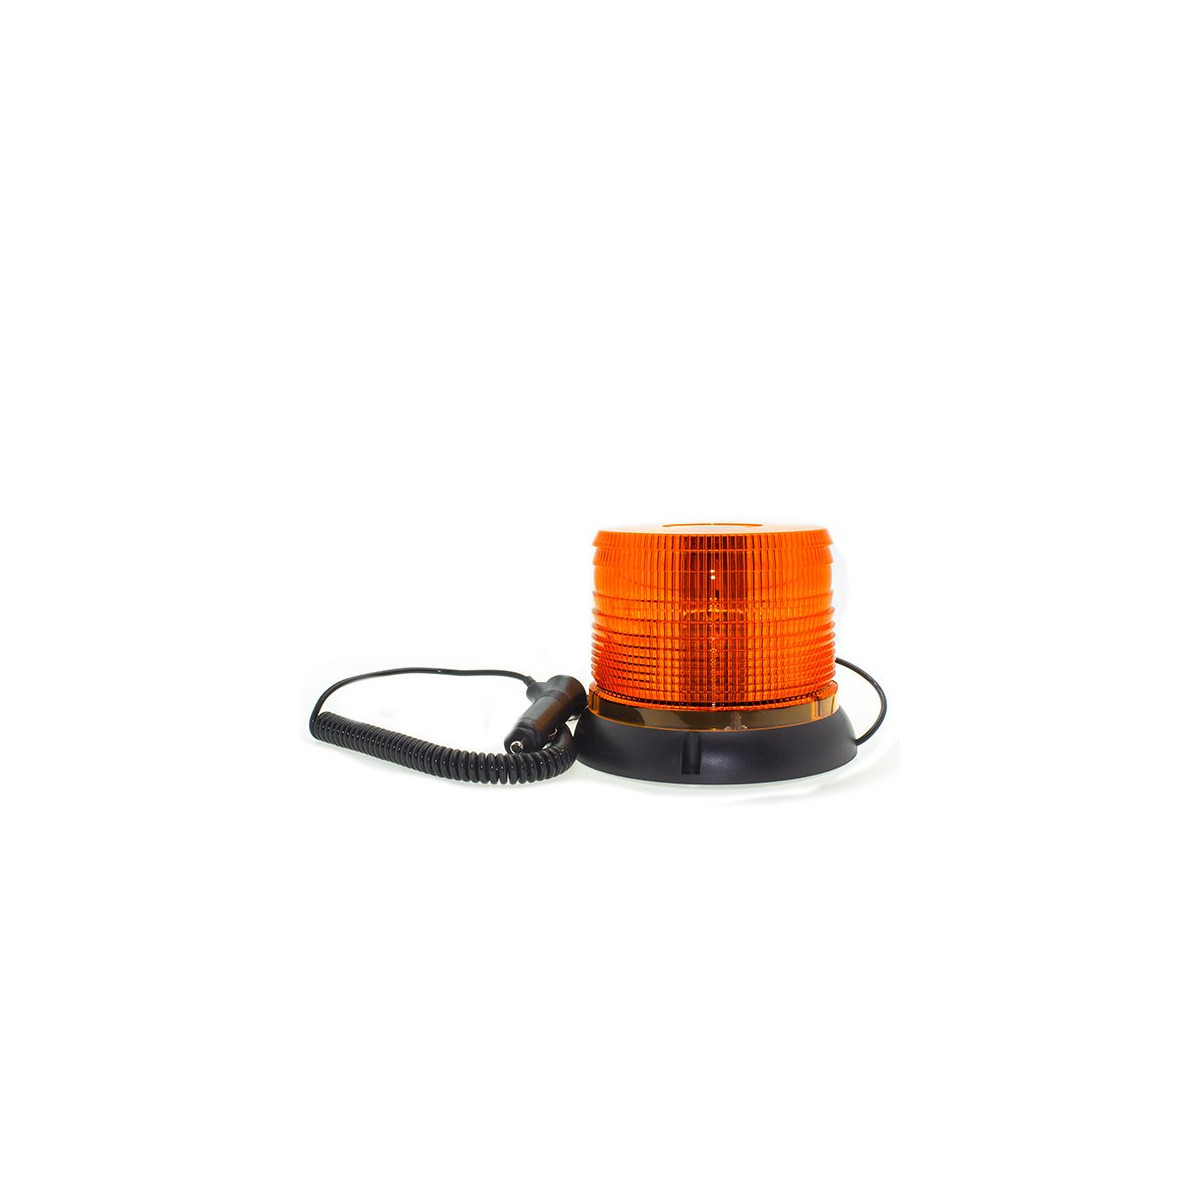 LED rotativa - base magnética